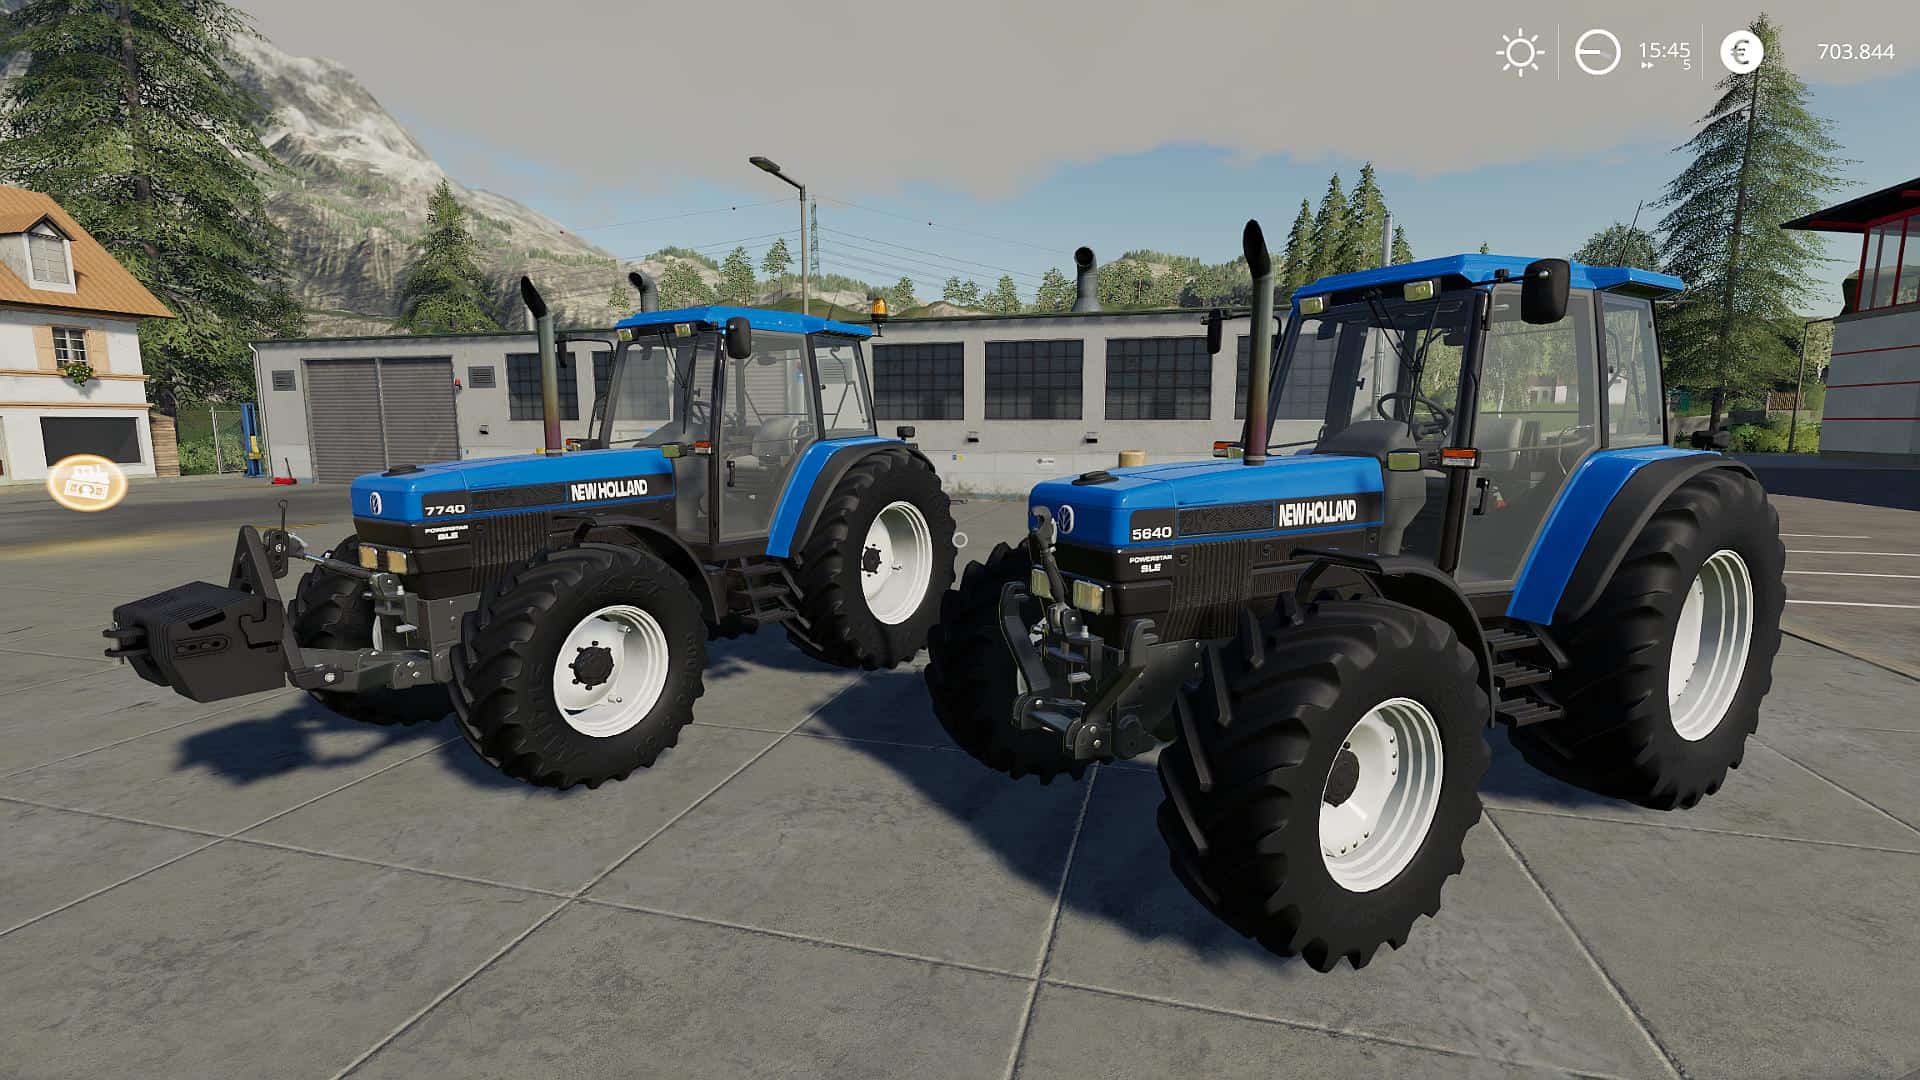 LS2019 New Holland 40er Serie v1.0 - Farming Simulator 19 mod, LS19 Mod download!